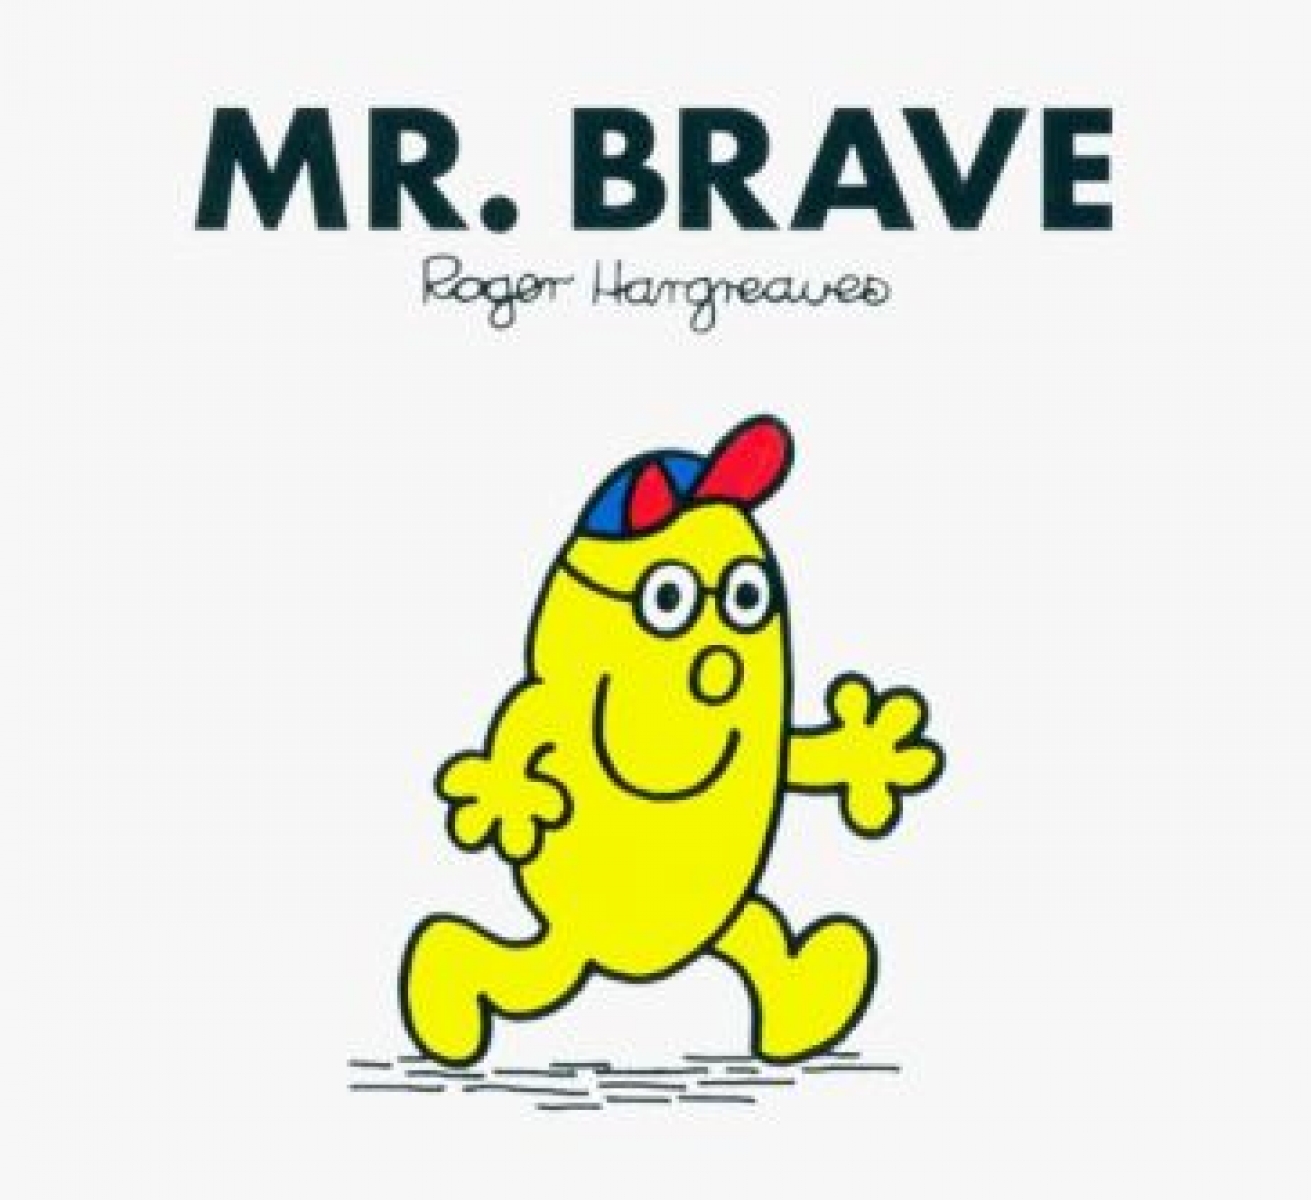 Hargreaves Roger Mr. Brave 